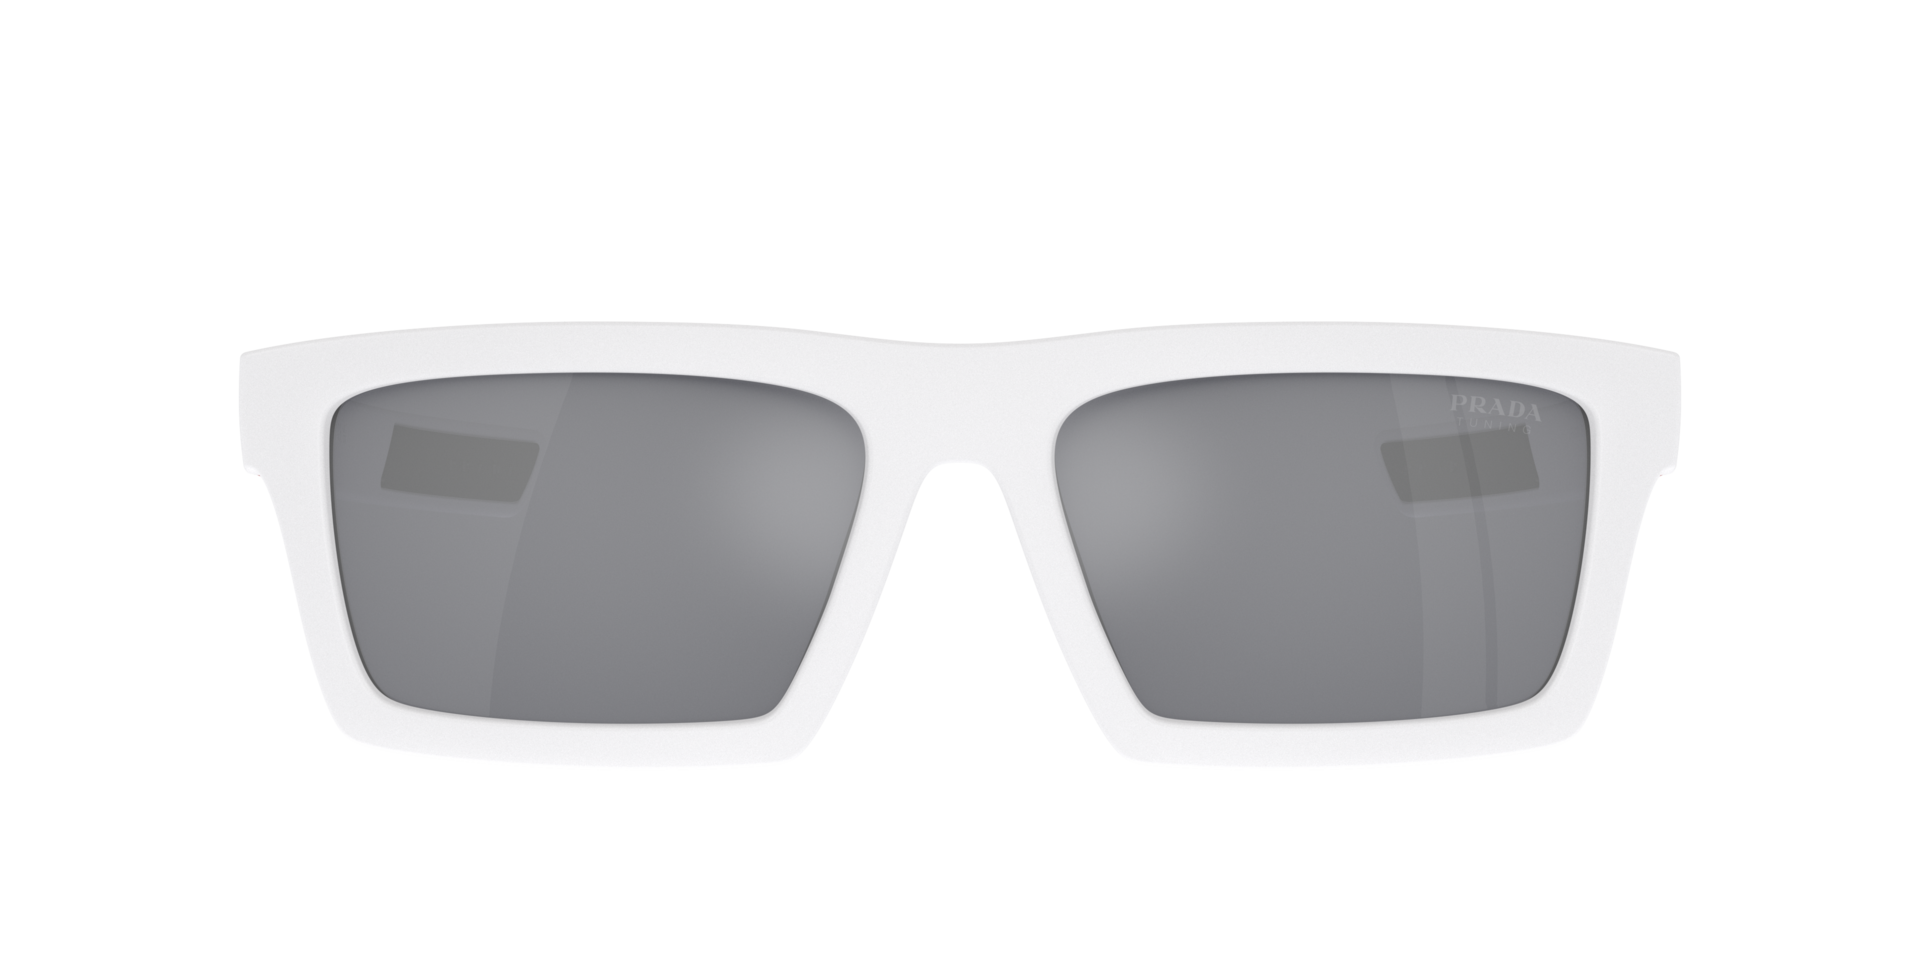 Das Bild zeigt die Sonnenbrille PS02ZSU 17S40A von der Marke Prada Linea Rossa in weiß.